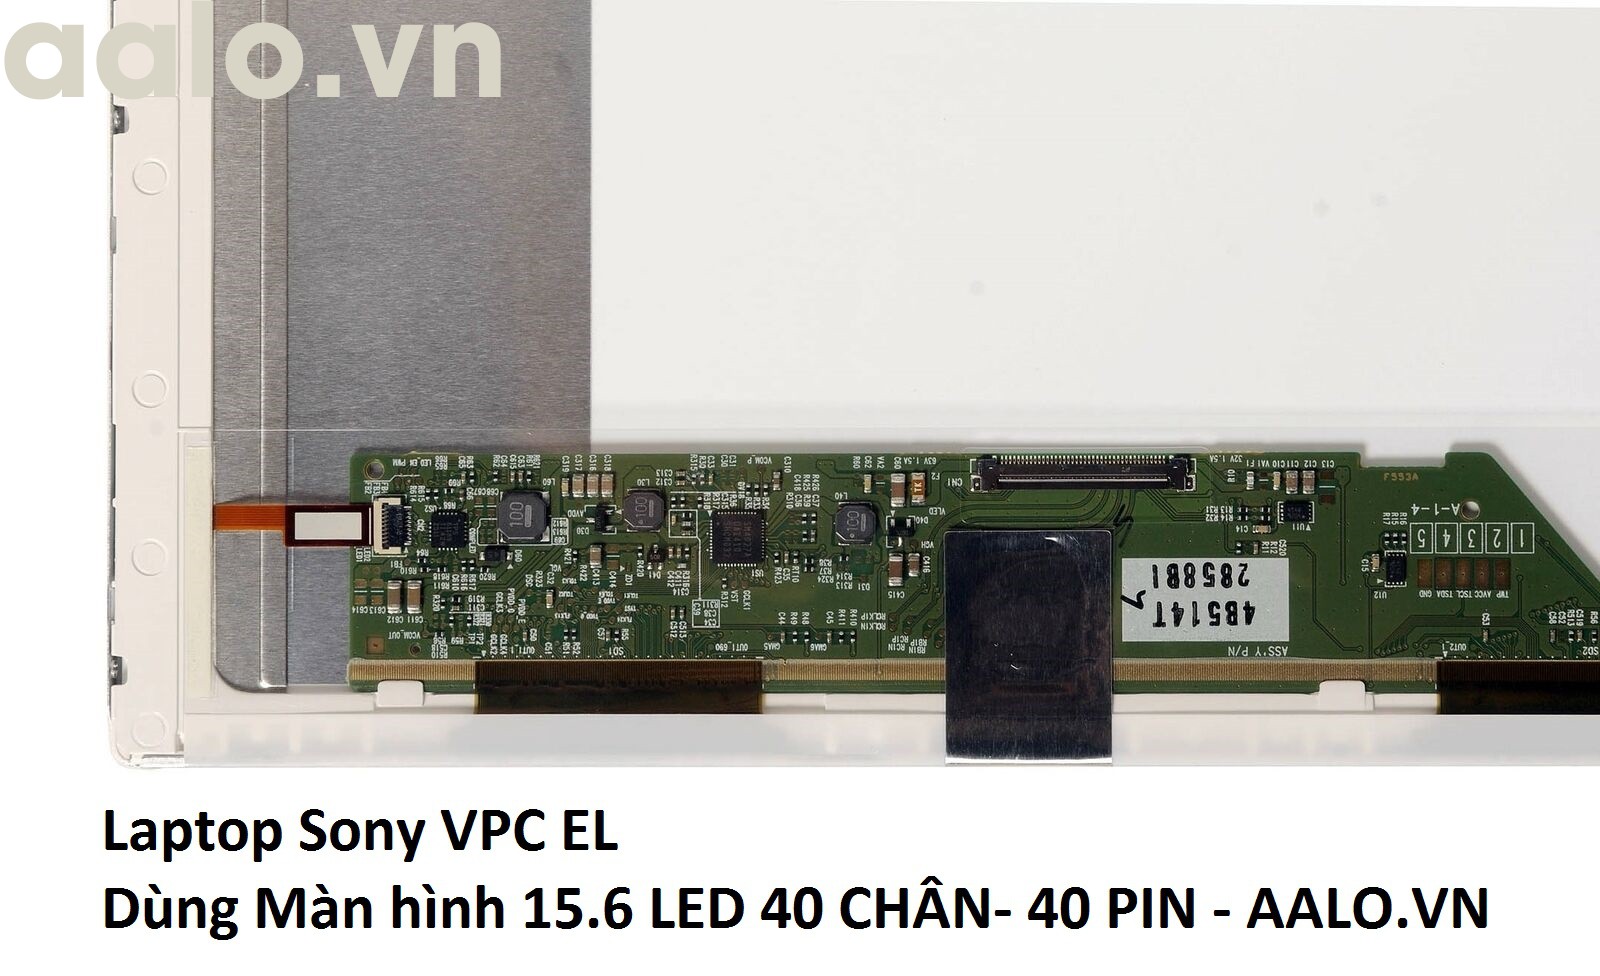 Màn hình laptop Sony VPC EL